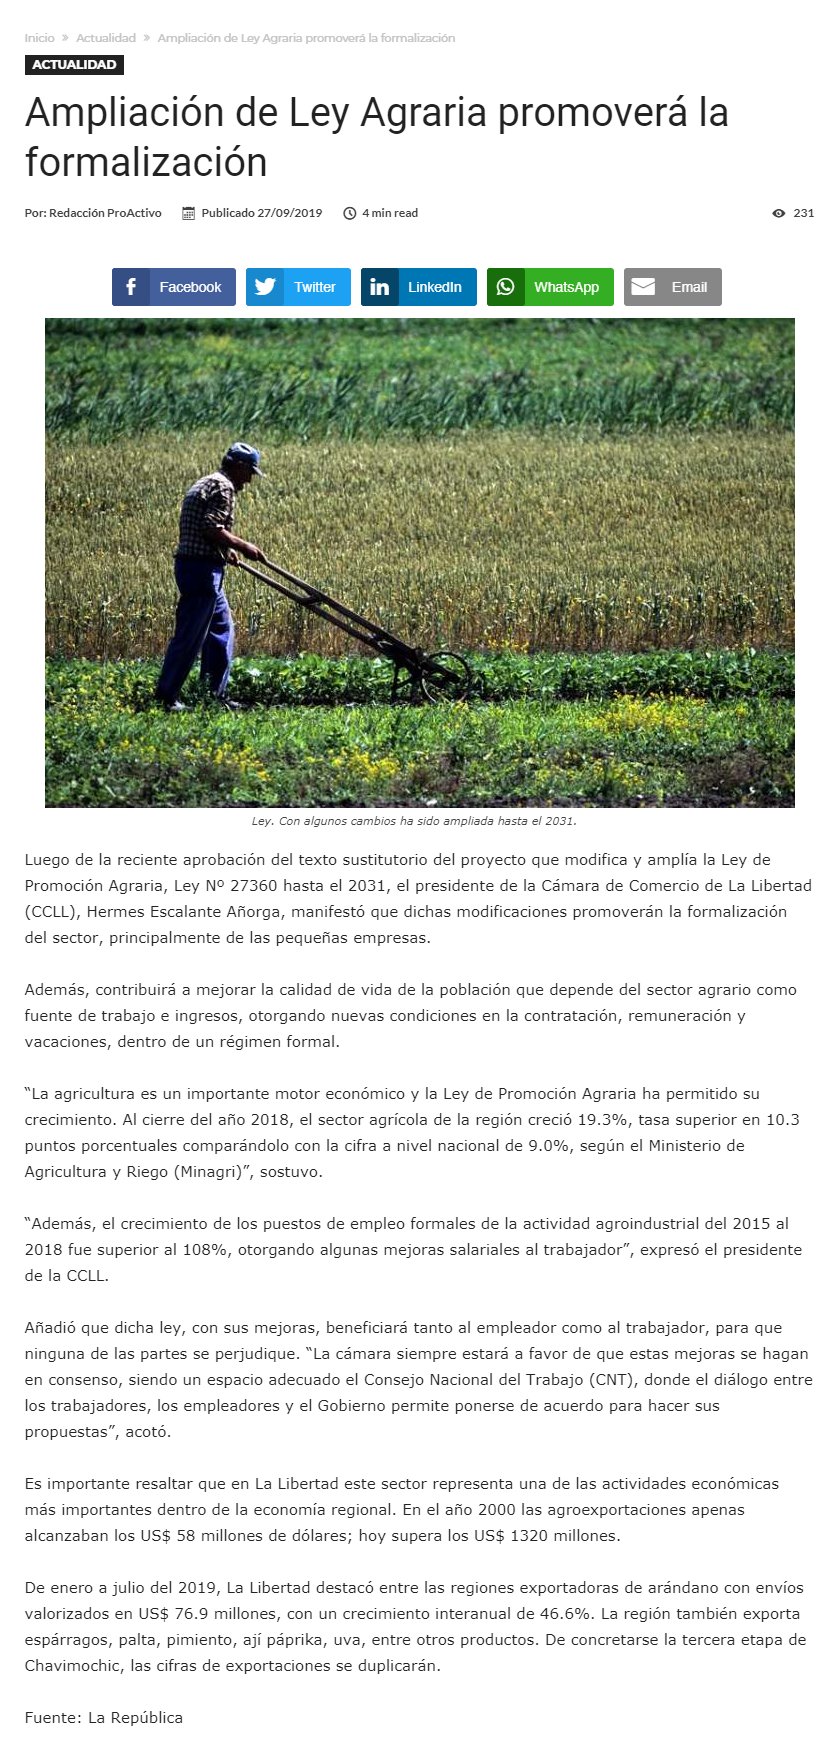 30.09.19.19 Pro Activo Ley de formalización agraria